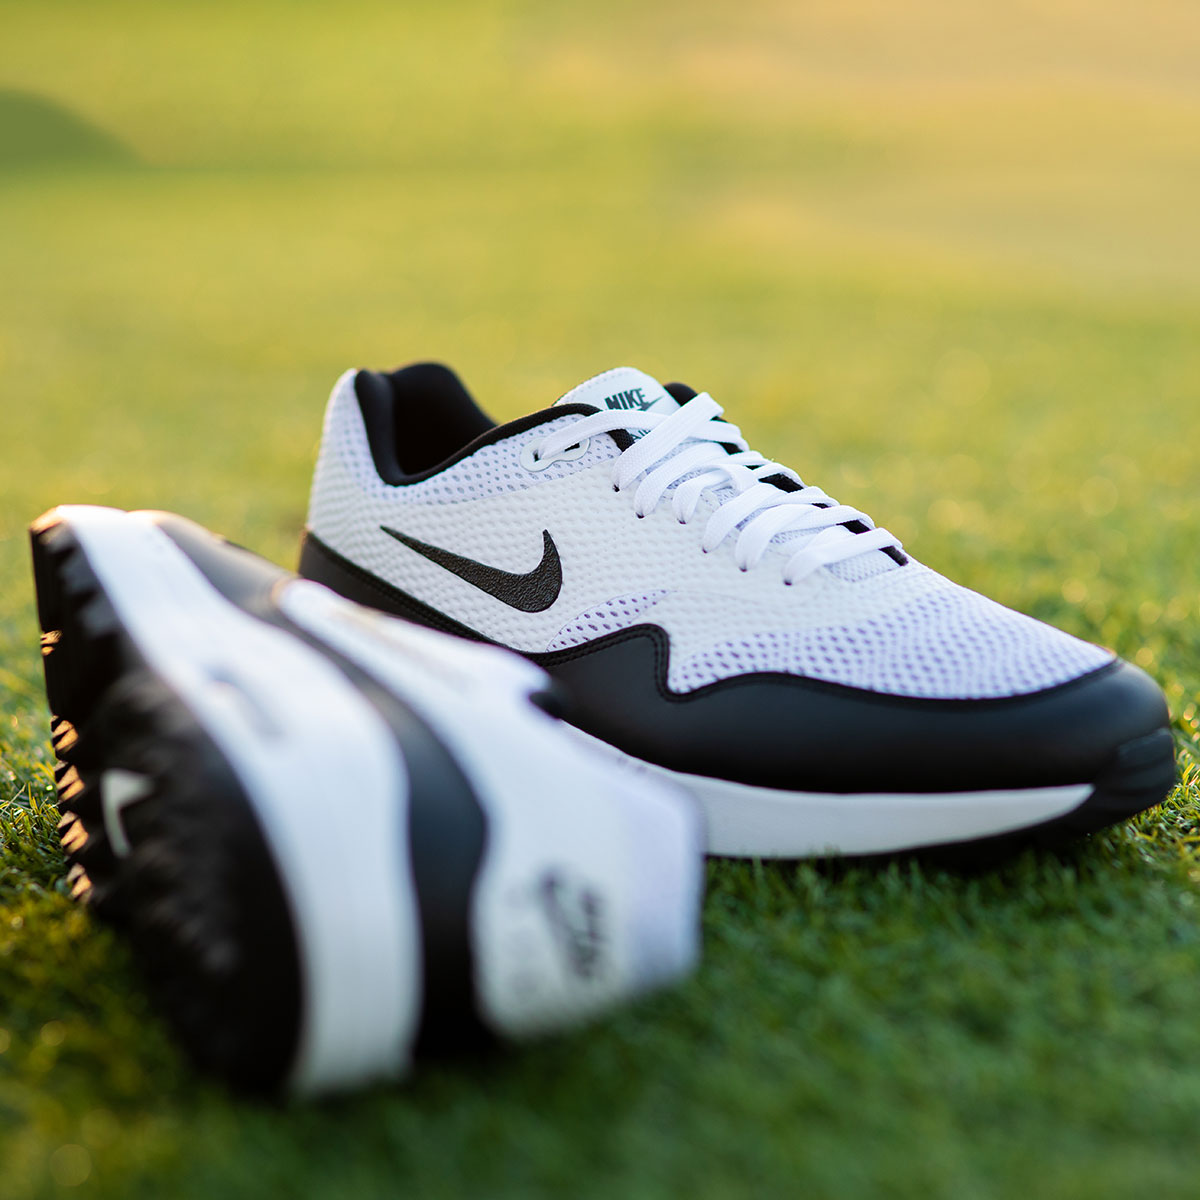 Nike Golf Air Max 1G Schuhe 2020 Online Golf